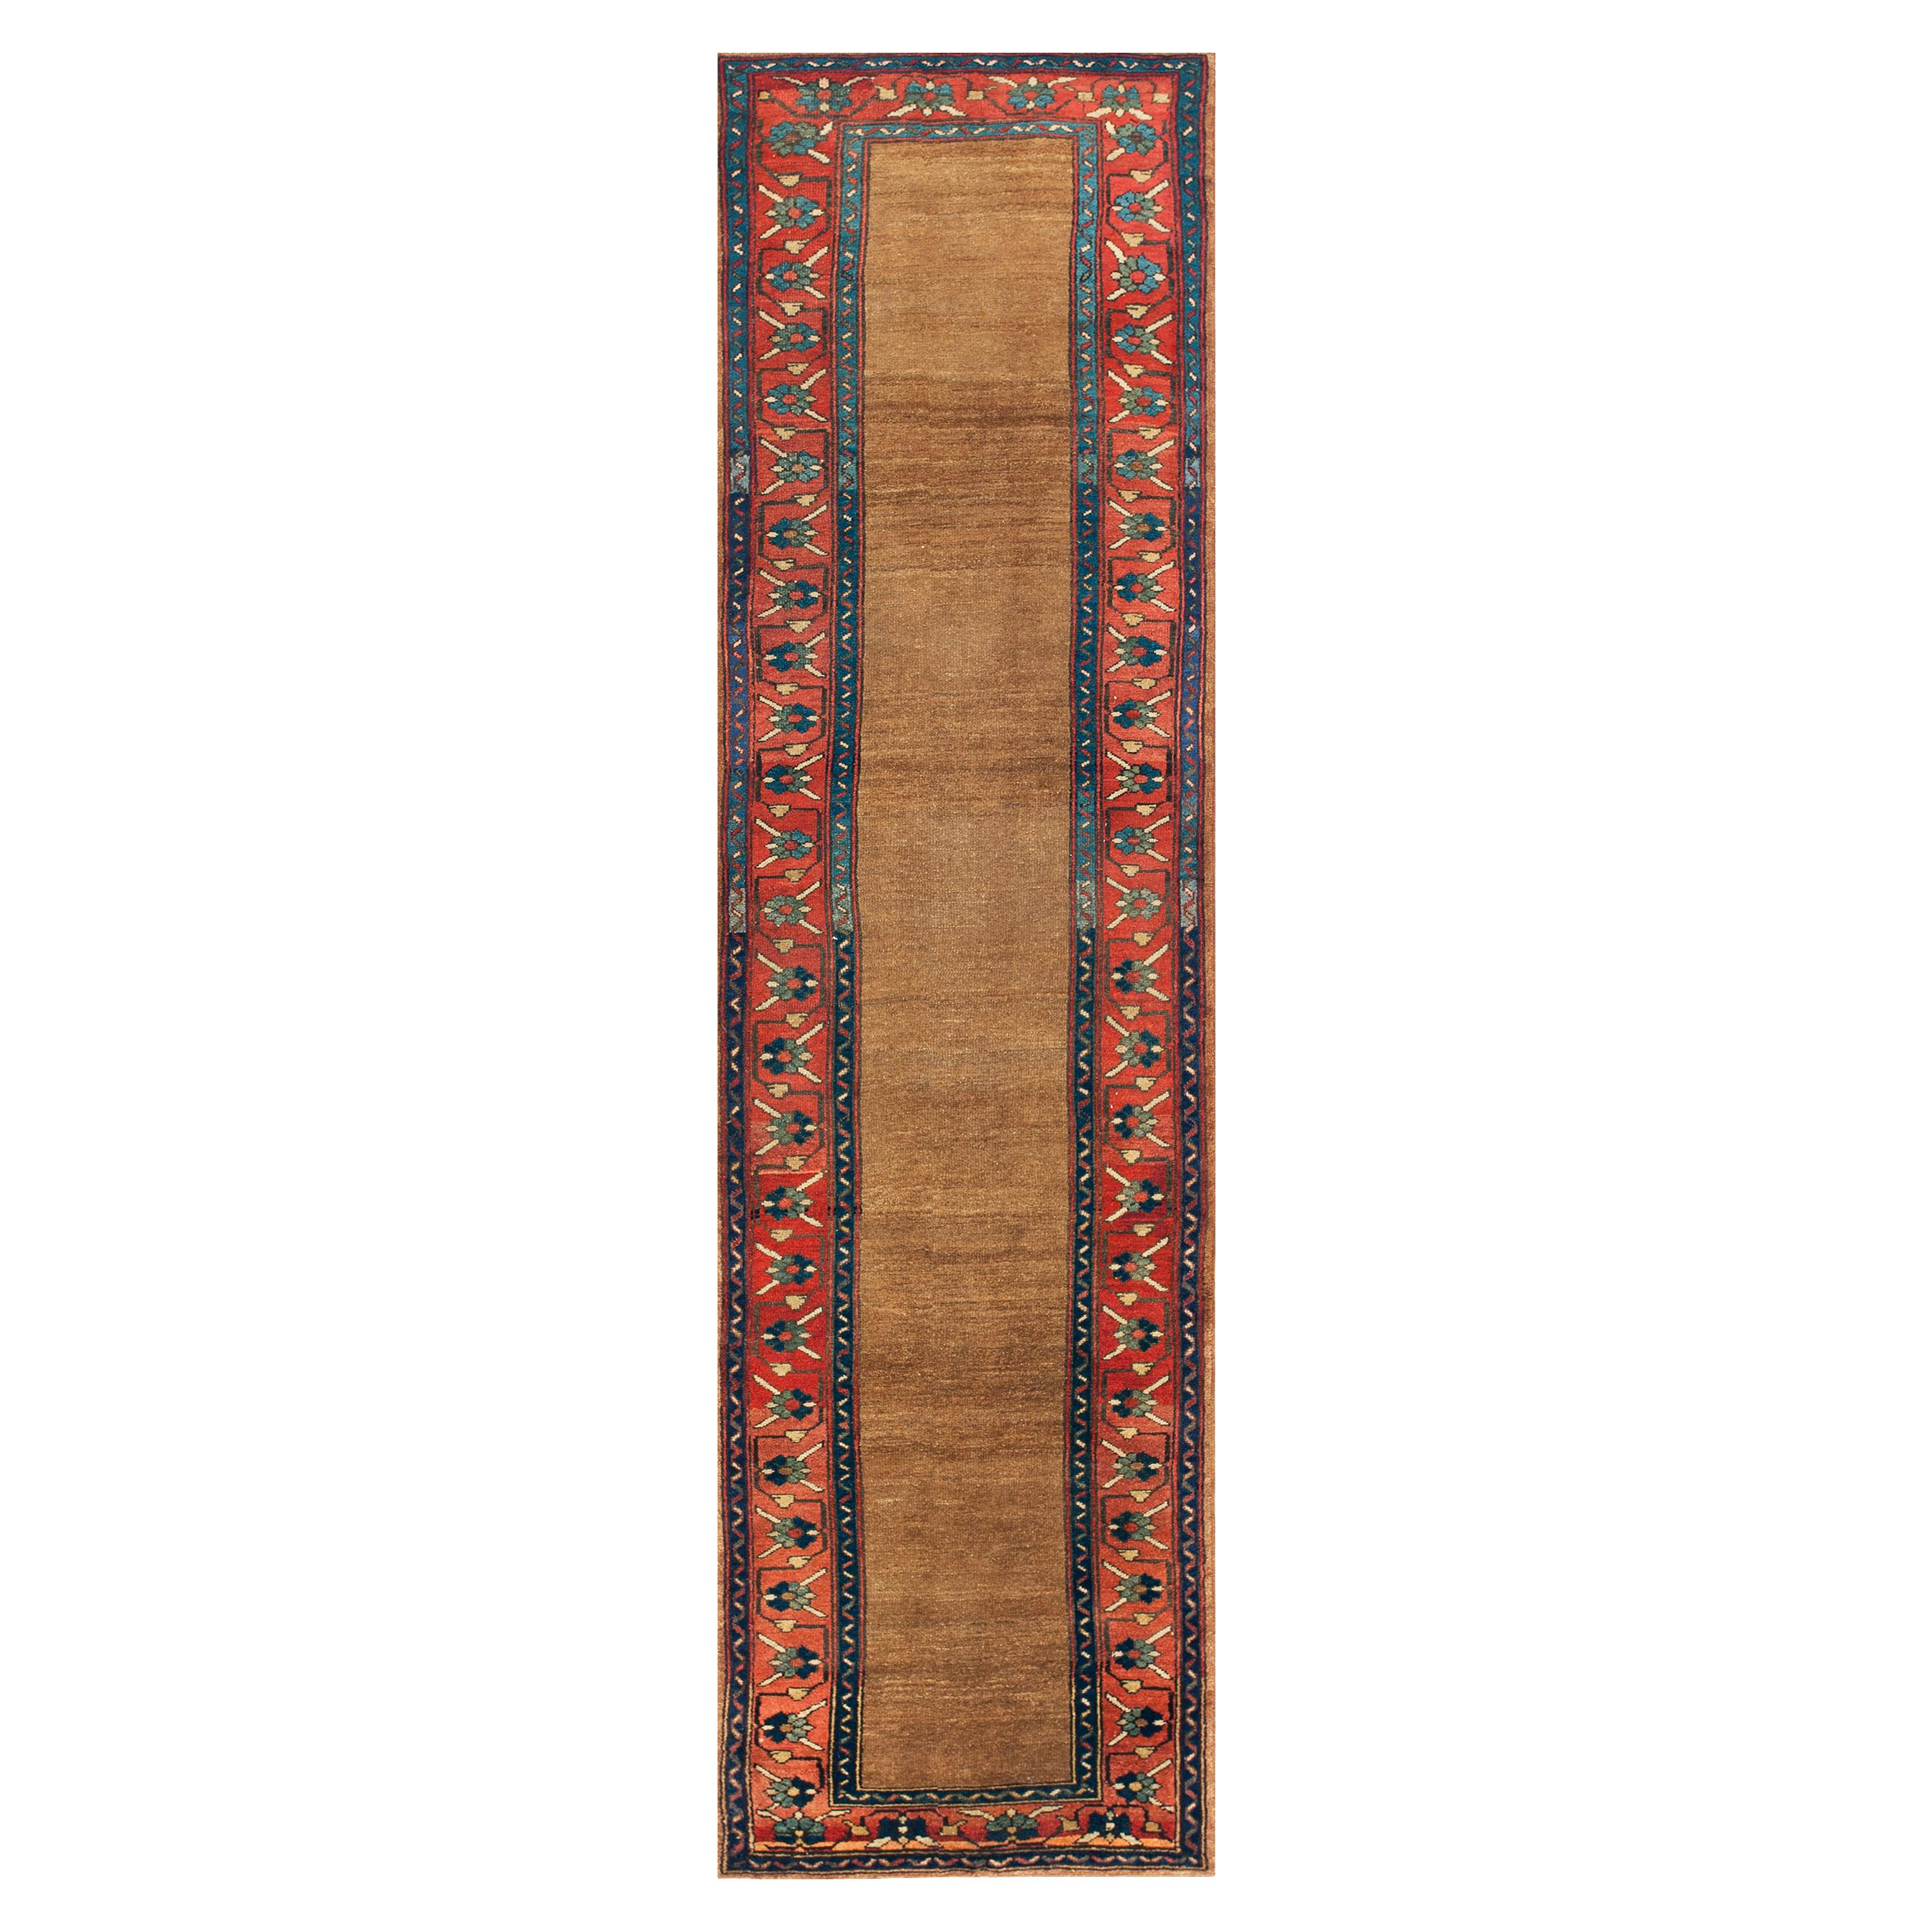 Late 19th Century W. Persian Kurdish Runner Carpet ( 3' x 10' - 91 x 328 )